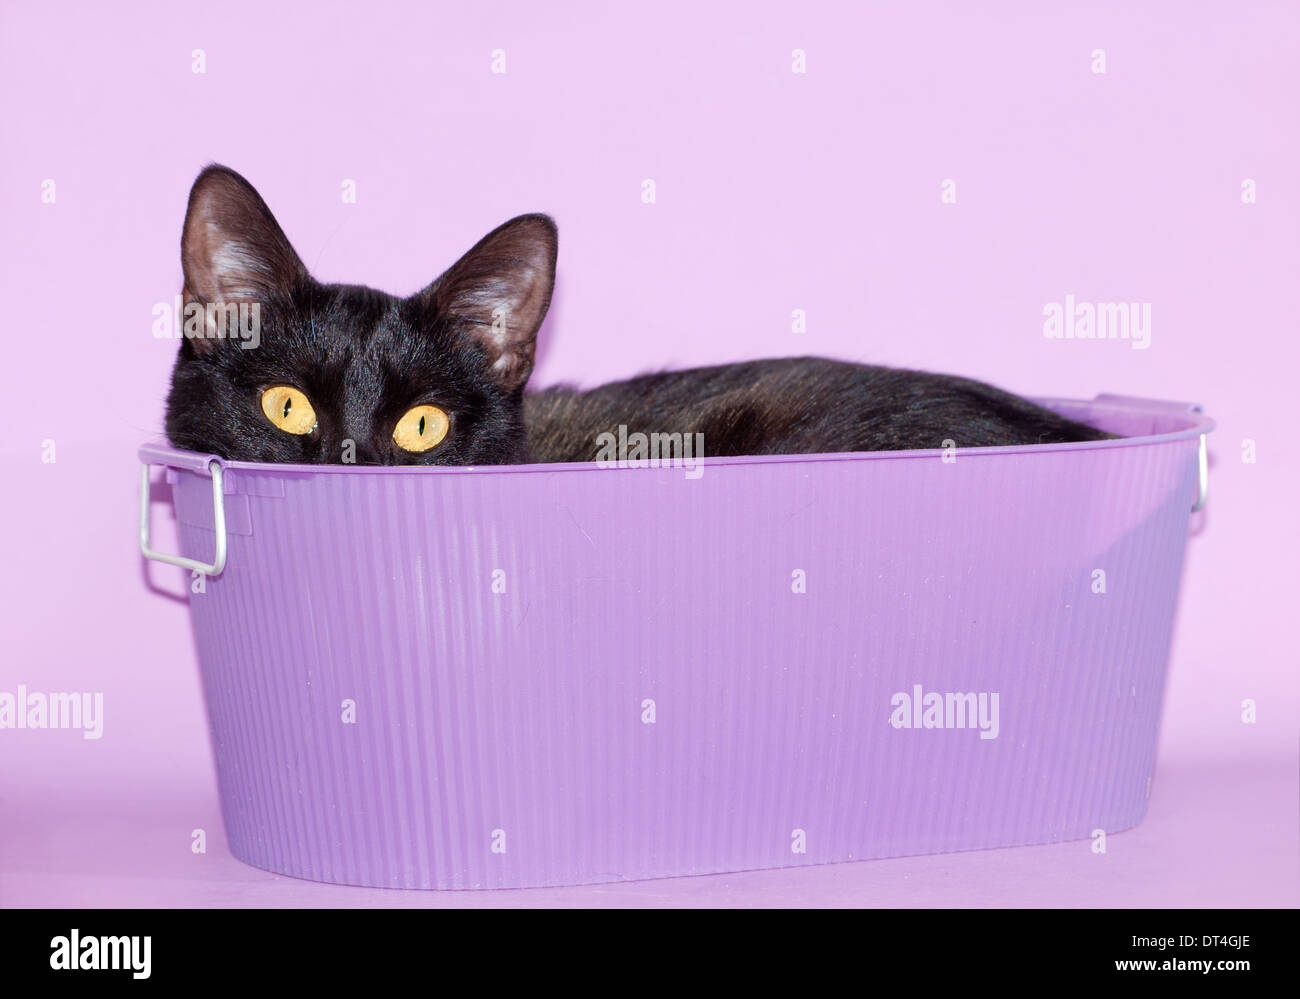 Gato negro que sobresale de una tina púrpura Foto de stock